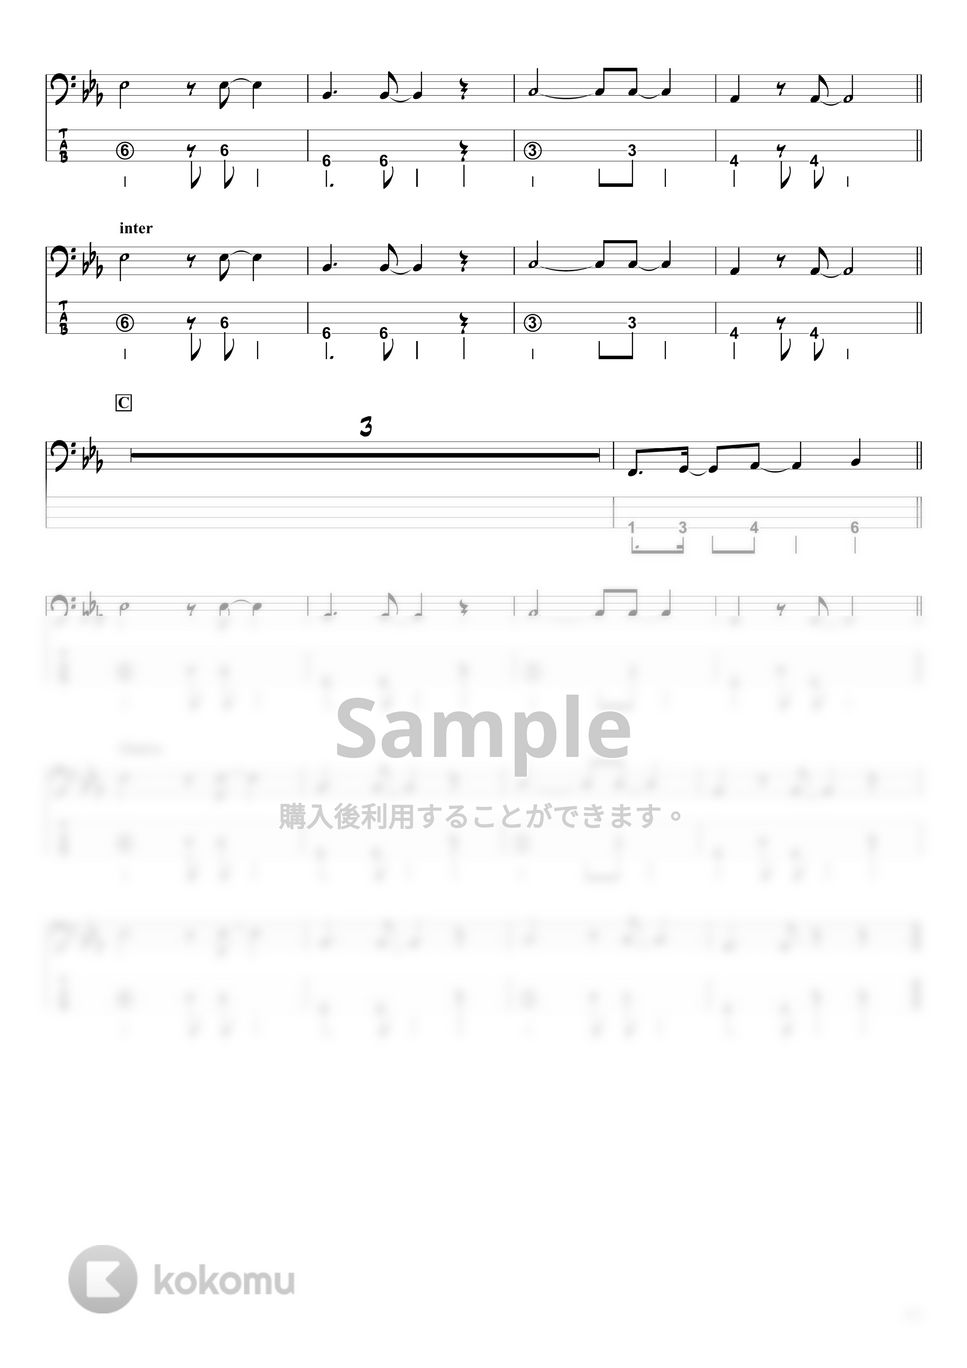 平井大 - Stand by me, Stand by you. (『ベースTAB譜』) by swbass